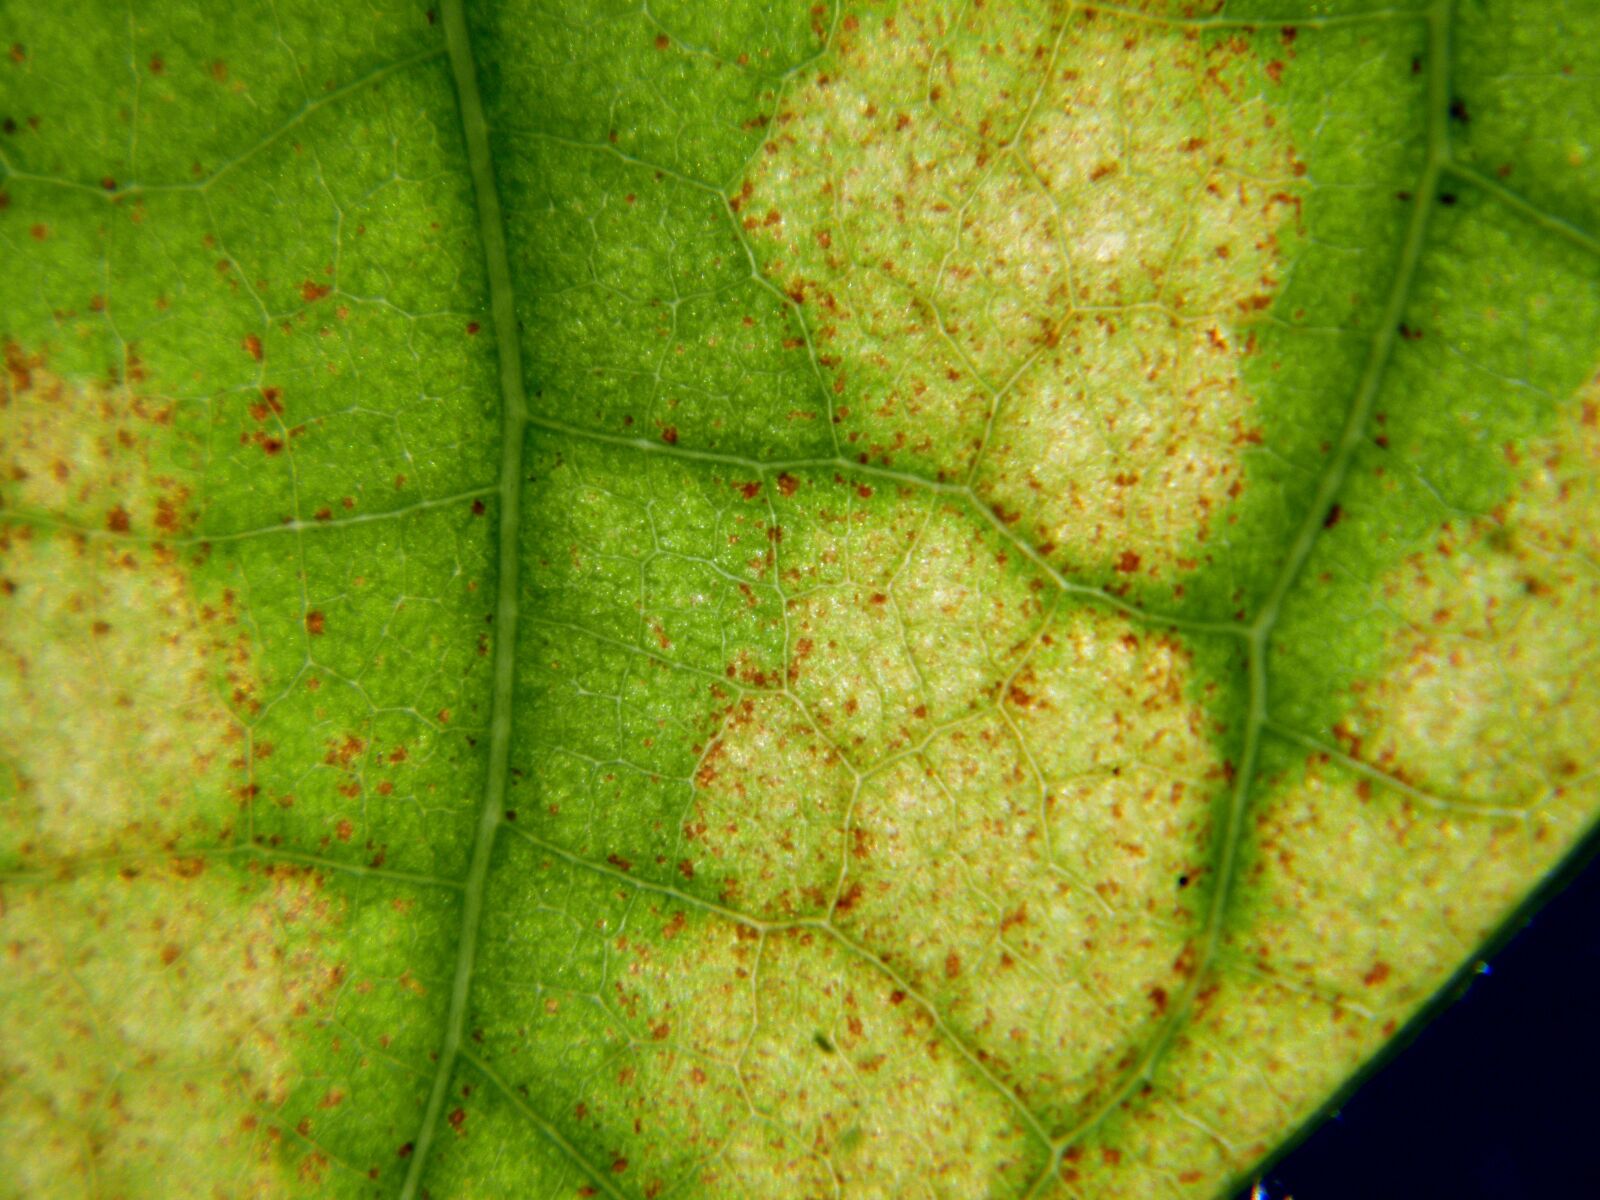 Olympus SP600UZ sample photo. Leaf, translucent, macro photography